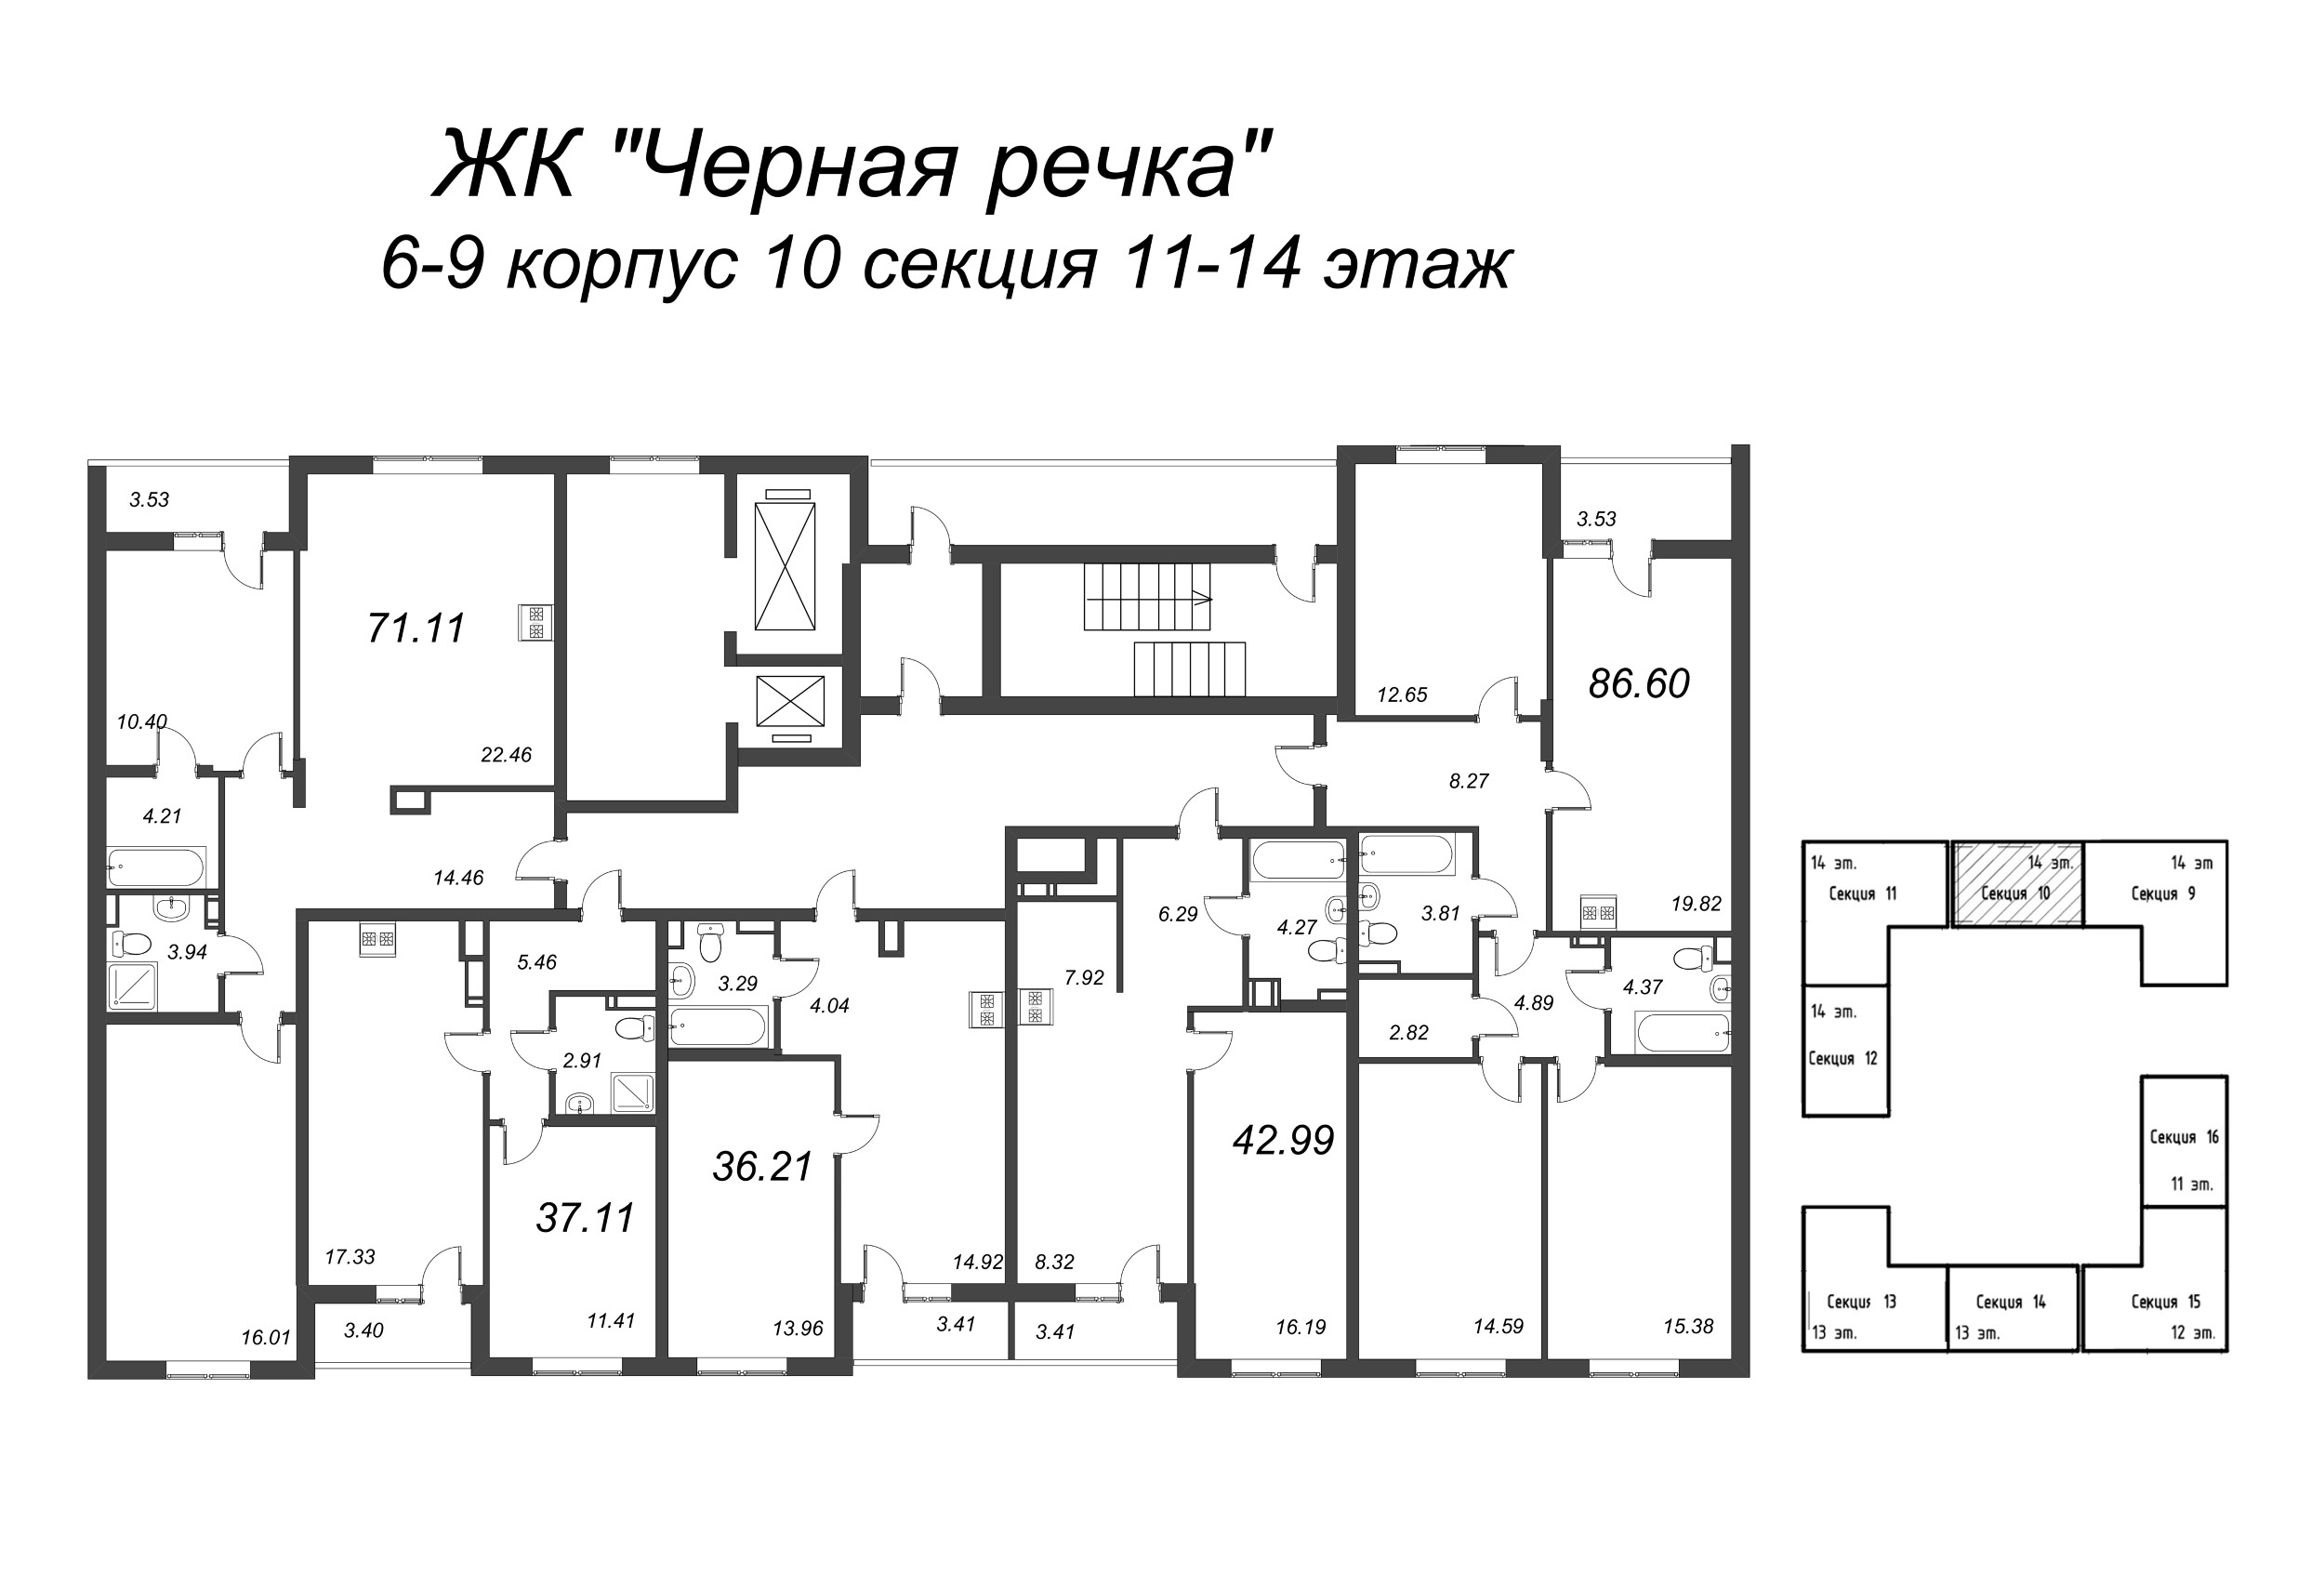 2-комнатная (Евро) квартира, 36.21 м² в ЖК "Чёрная речка" - планировка этажа